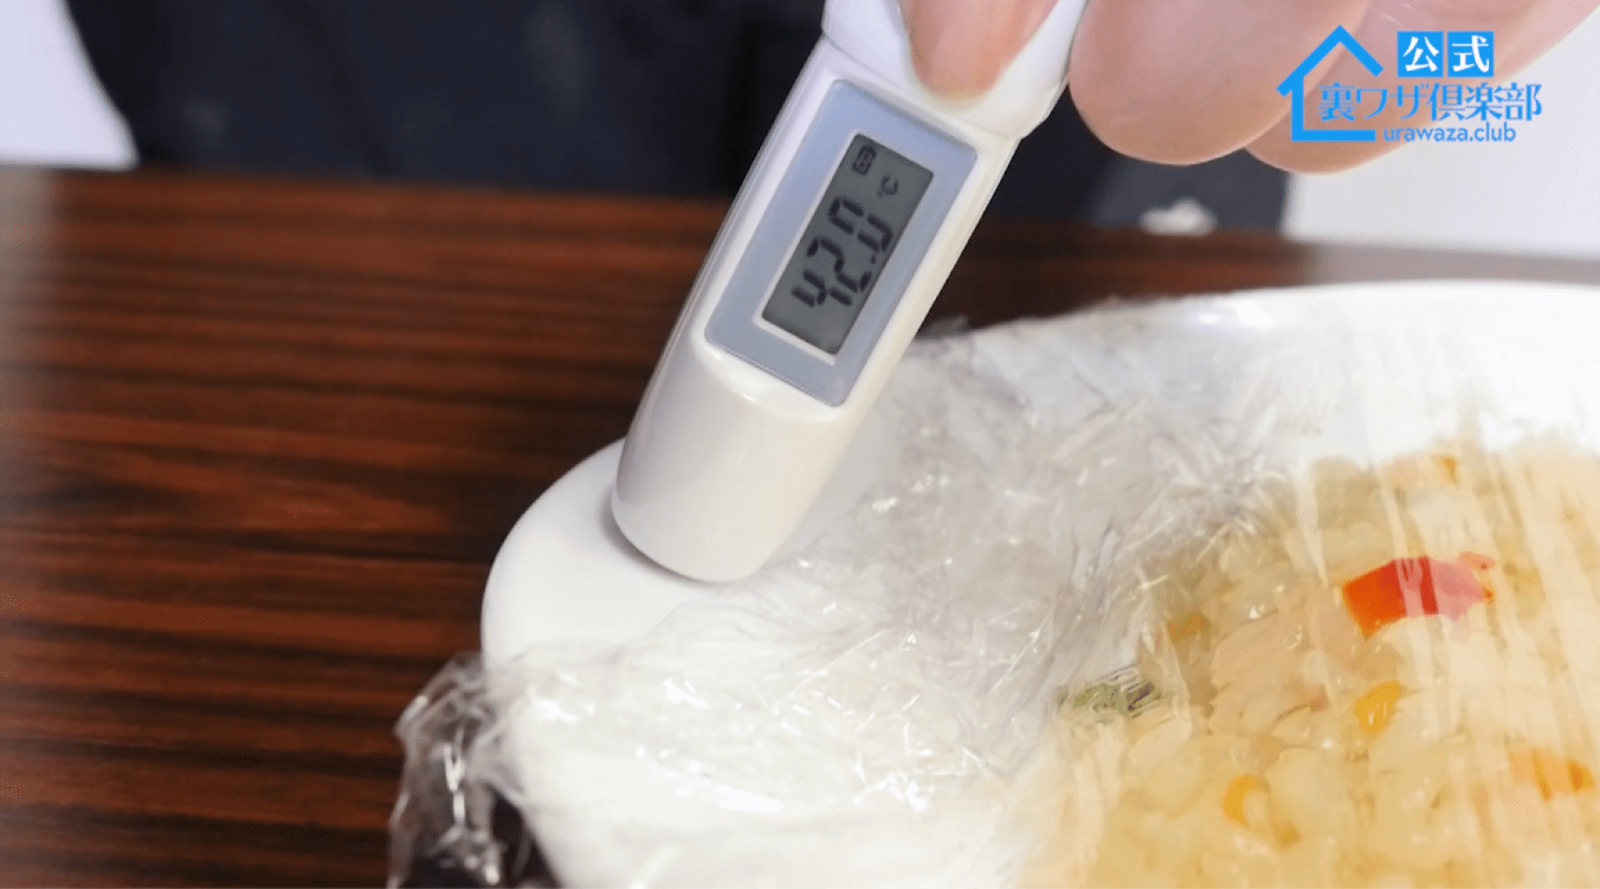 レンジで加熱したラップの温度を測る女性